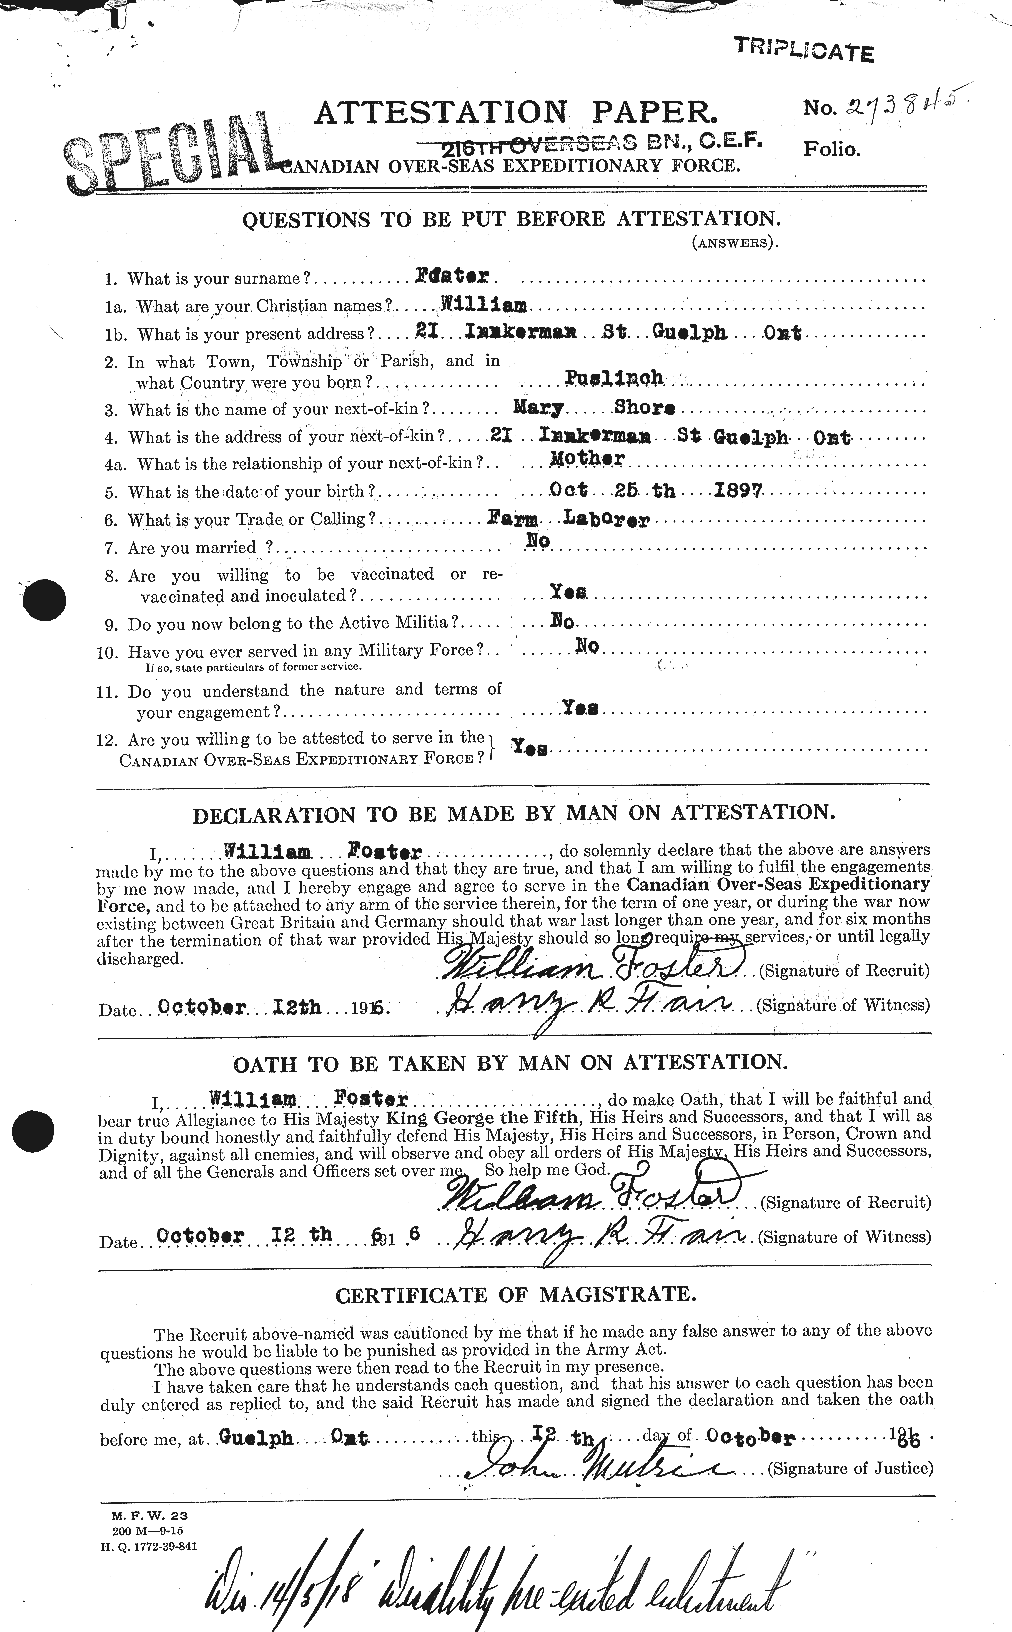 Dossiers du Personnel de la Première Guerre mondiale - CEC 335274a